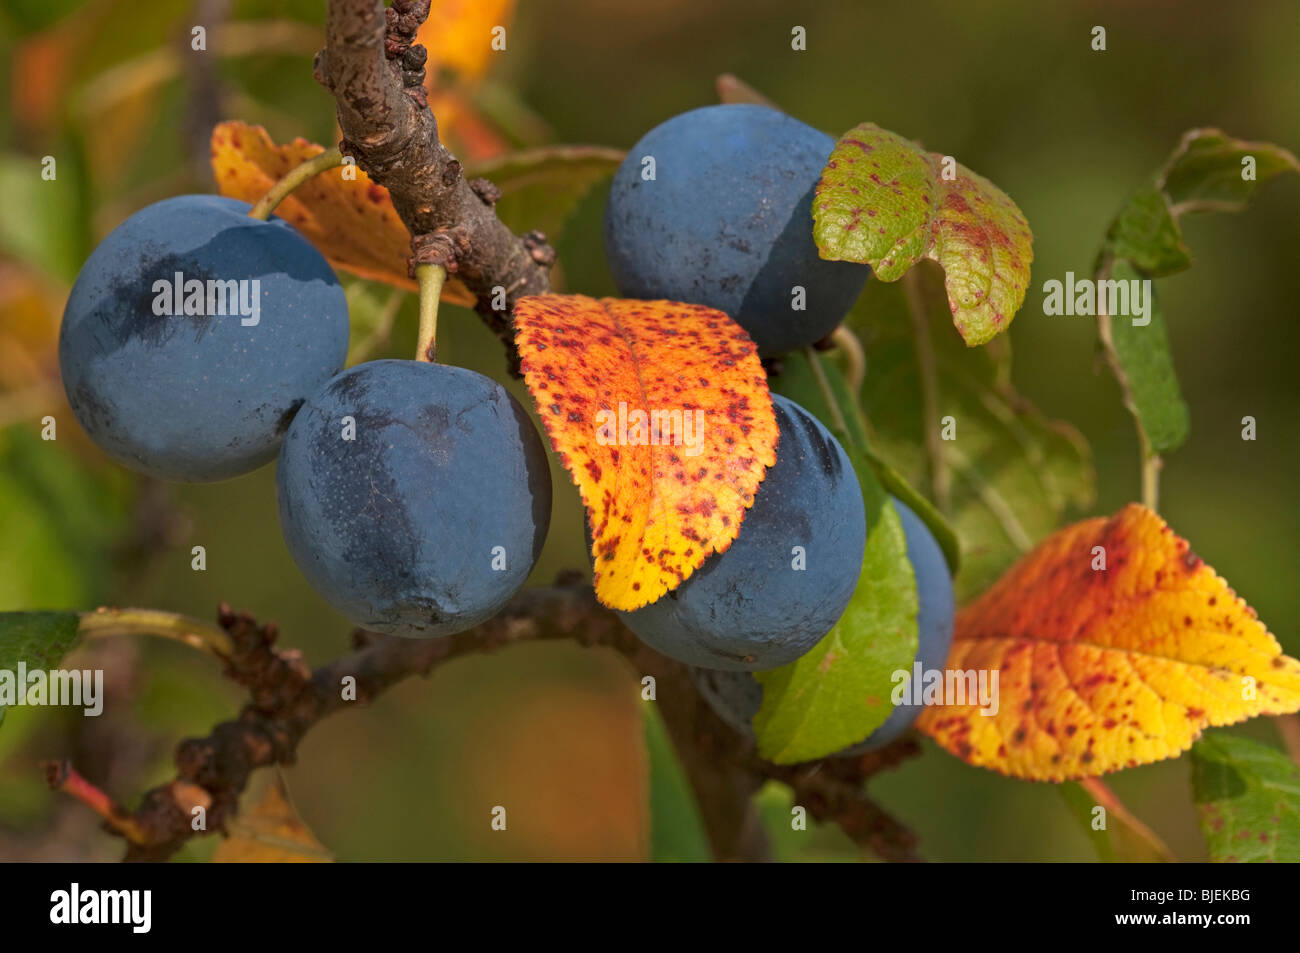 Anglais Bullace prune, Damson prunier (Prunus domestica ssp. incisia, Prunus insititia), branche avec fruits mûrs à la fin de l'été. Banque D'Images